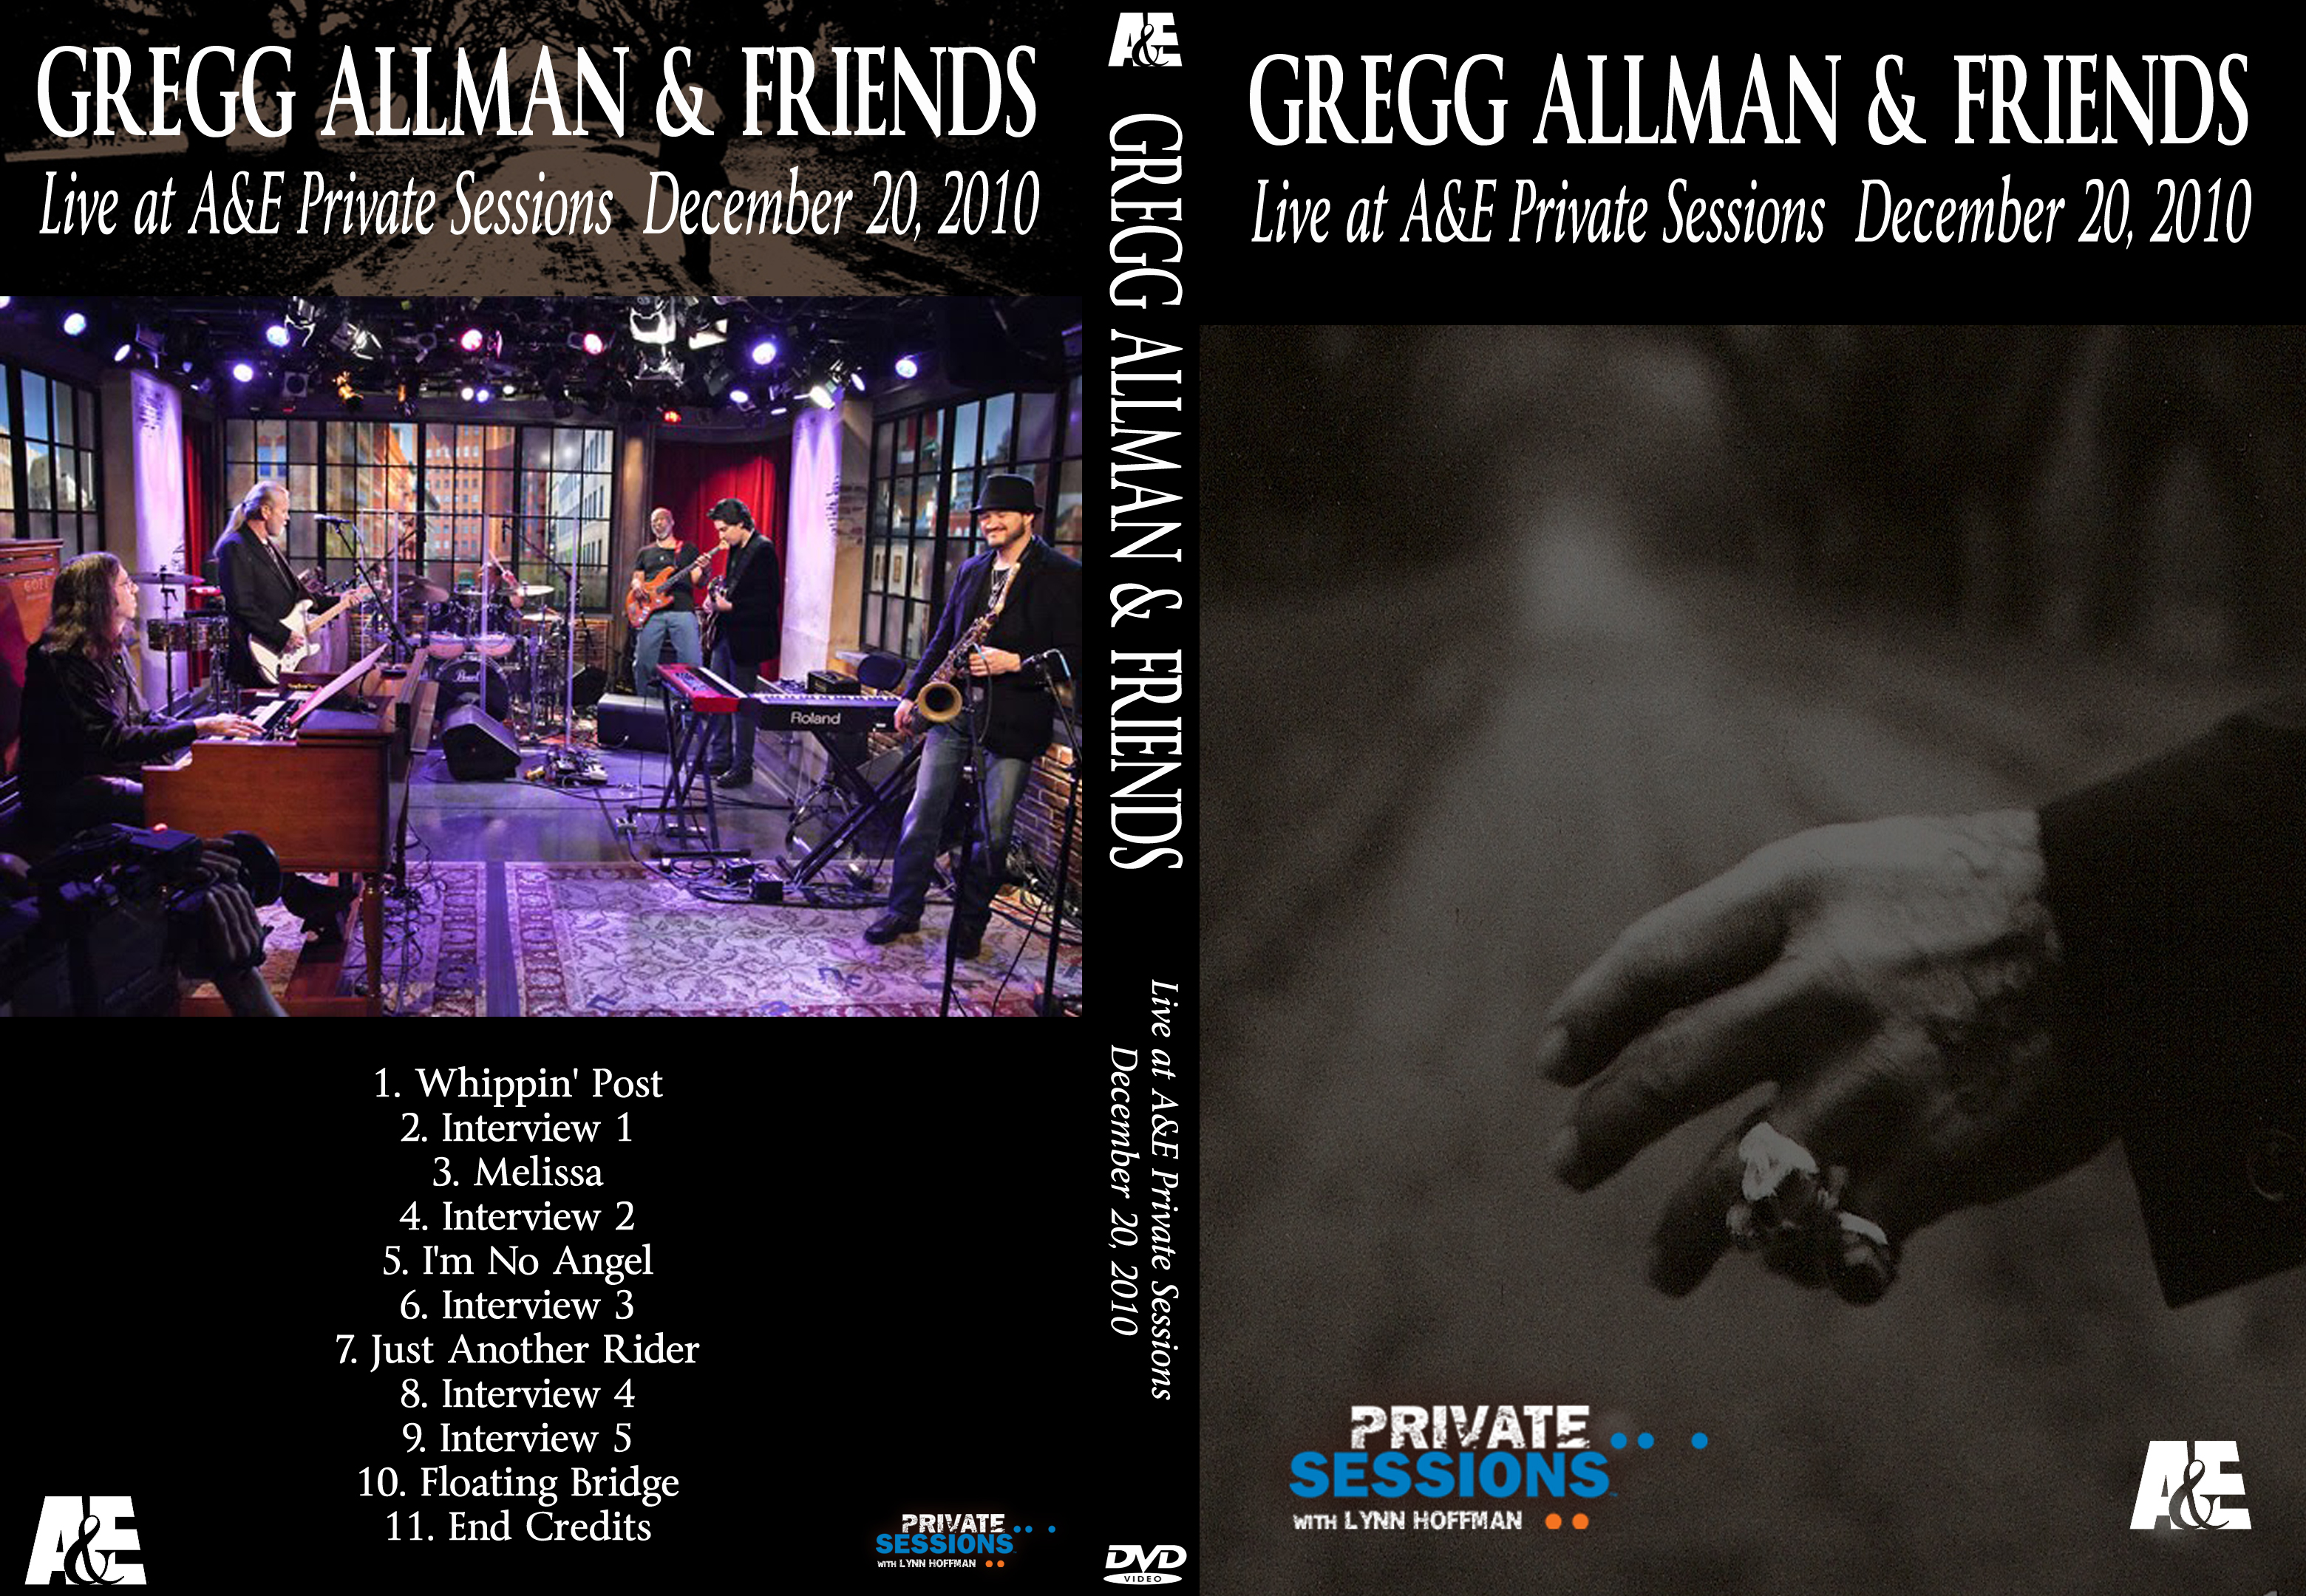 Gregg Allman & Friends live at A&E Private Sessions